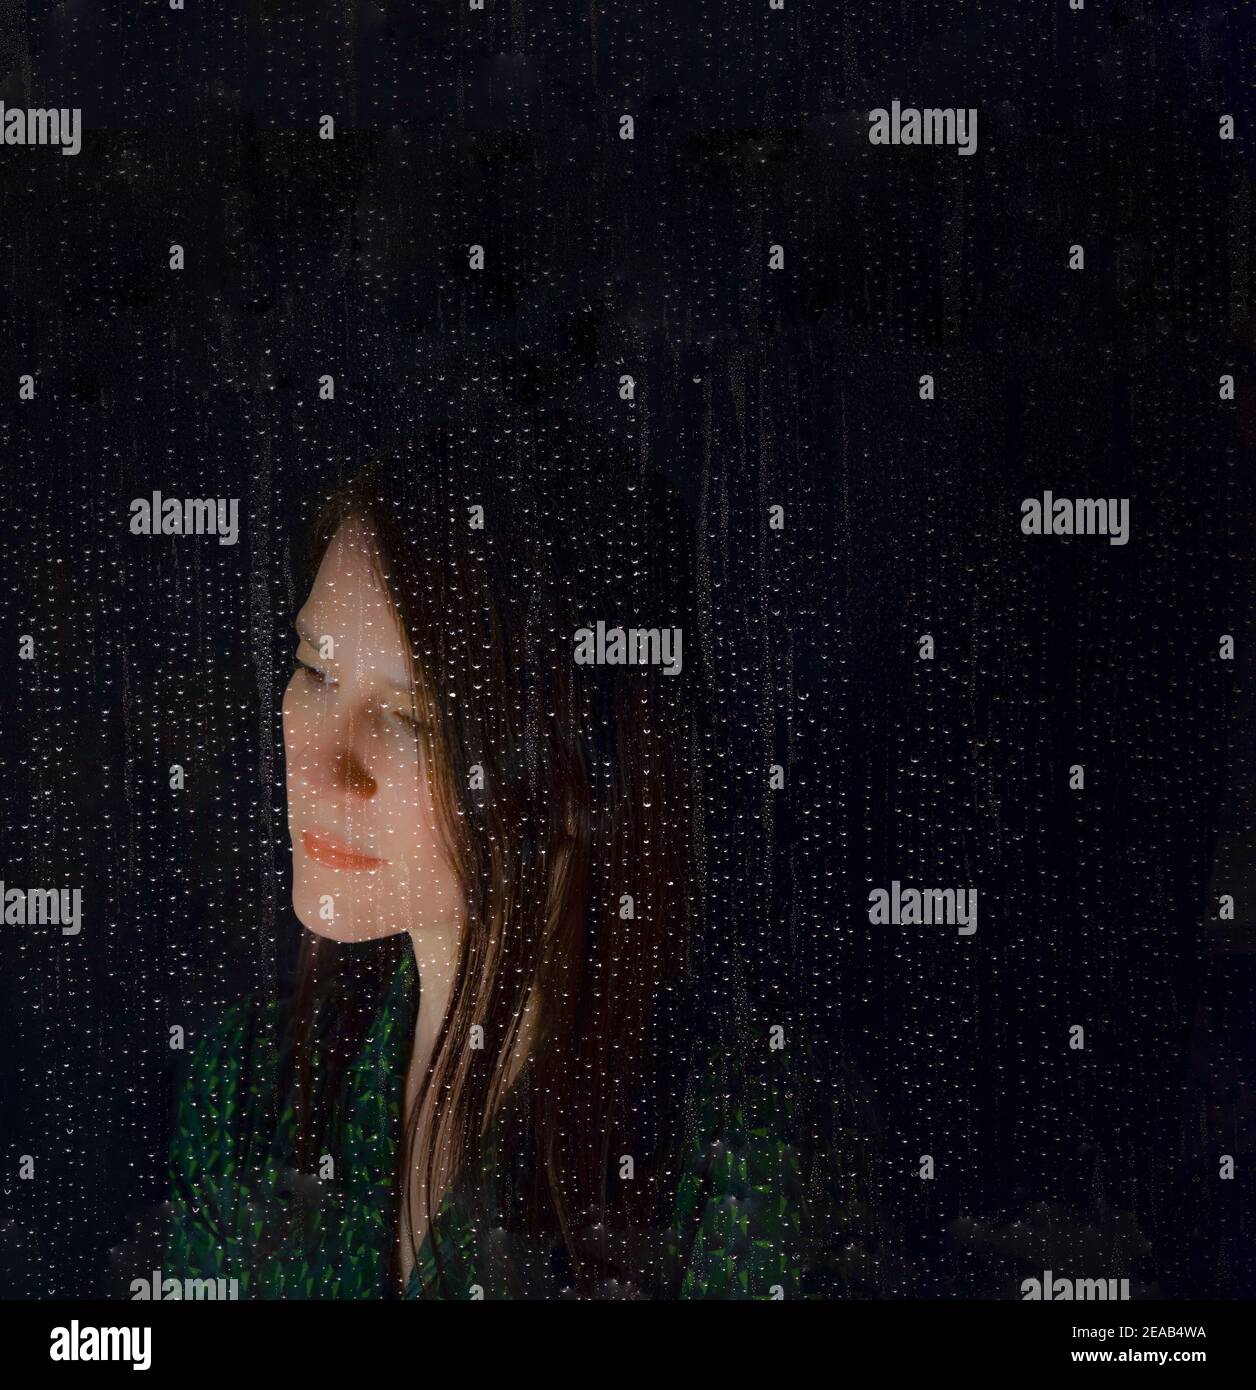 Donna serissima dietro una finestra con gocce di pioggia, immagine composita digitale astratta Foto Stock